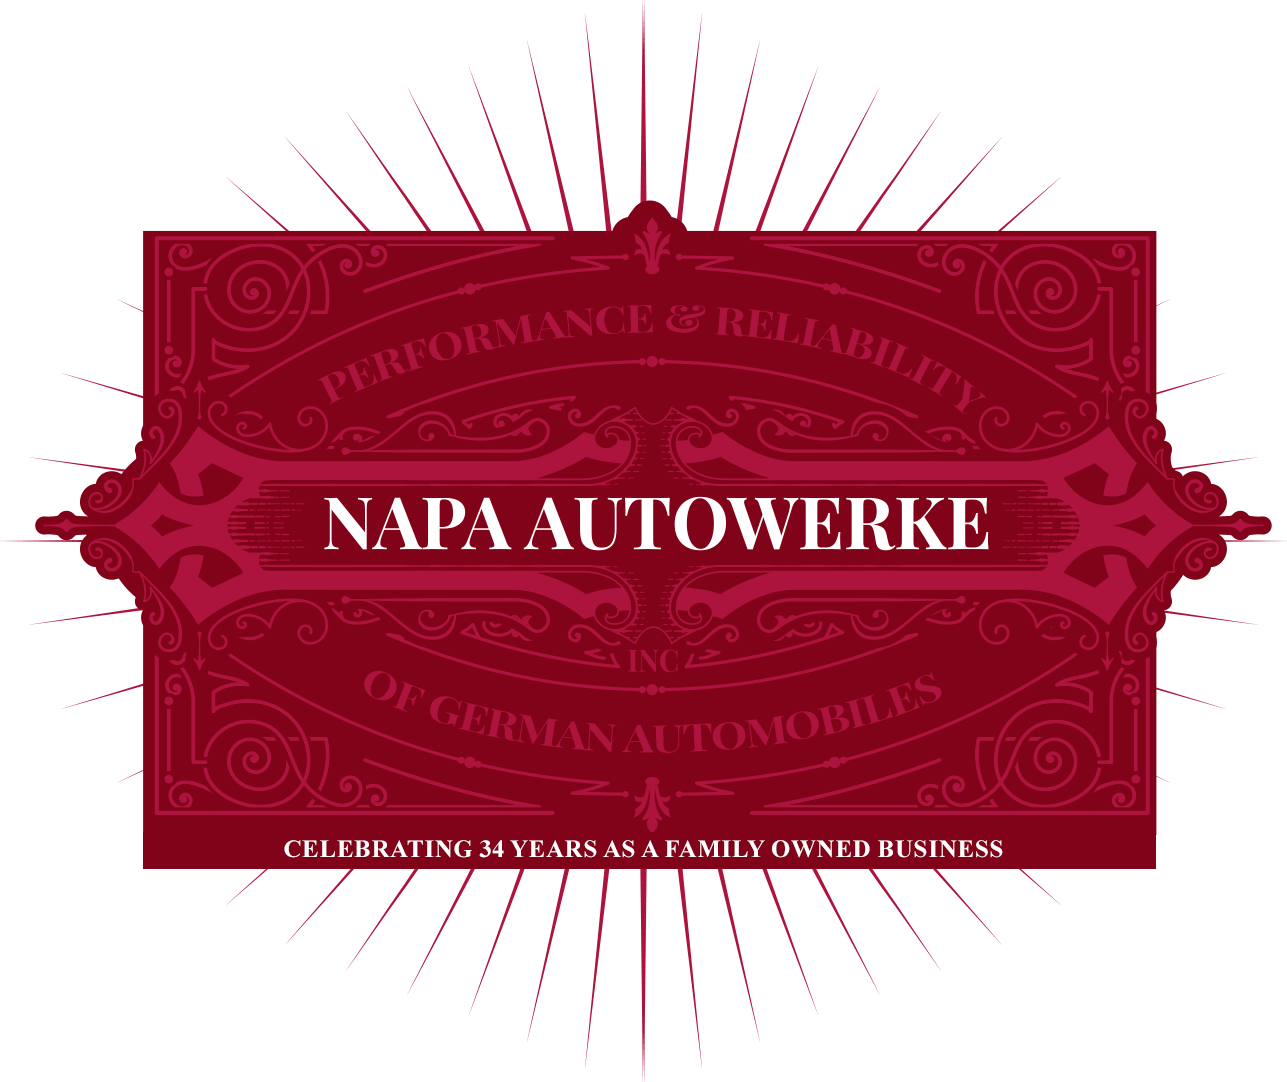 Napa Autowerke Inc